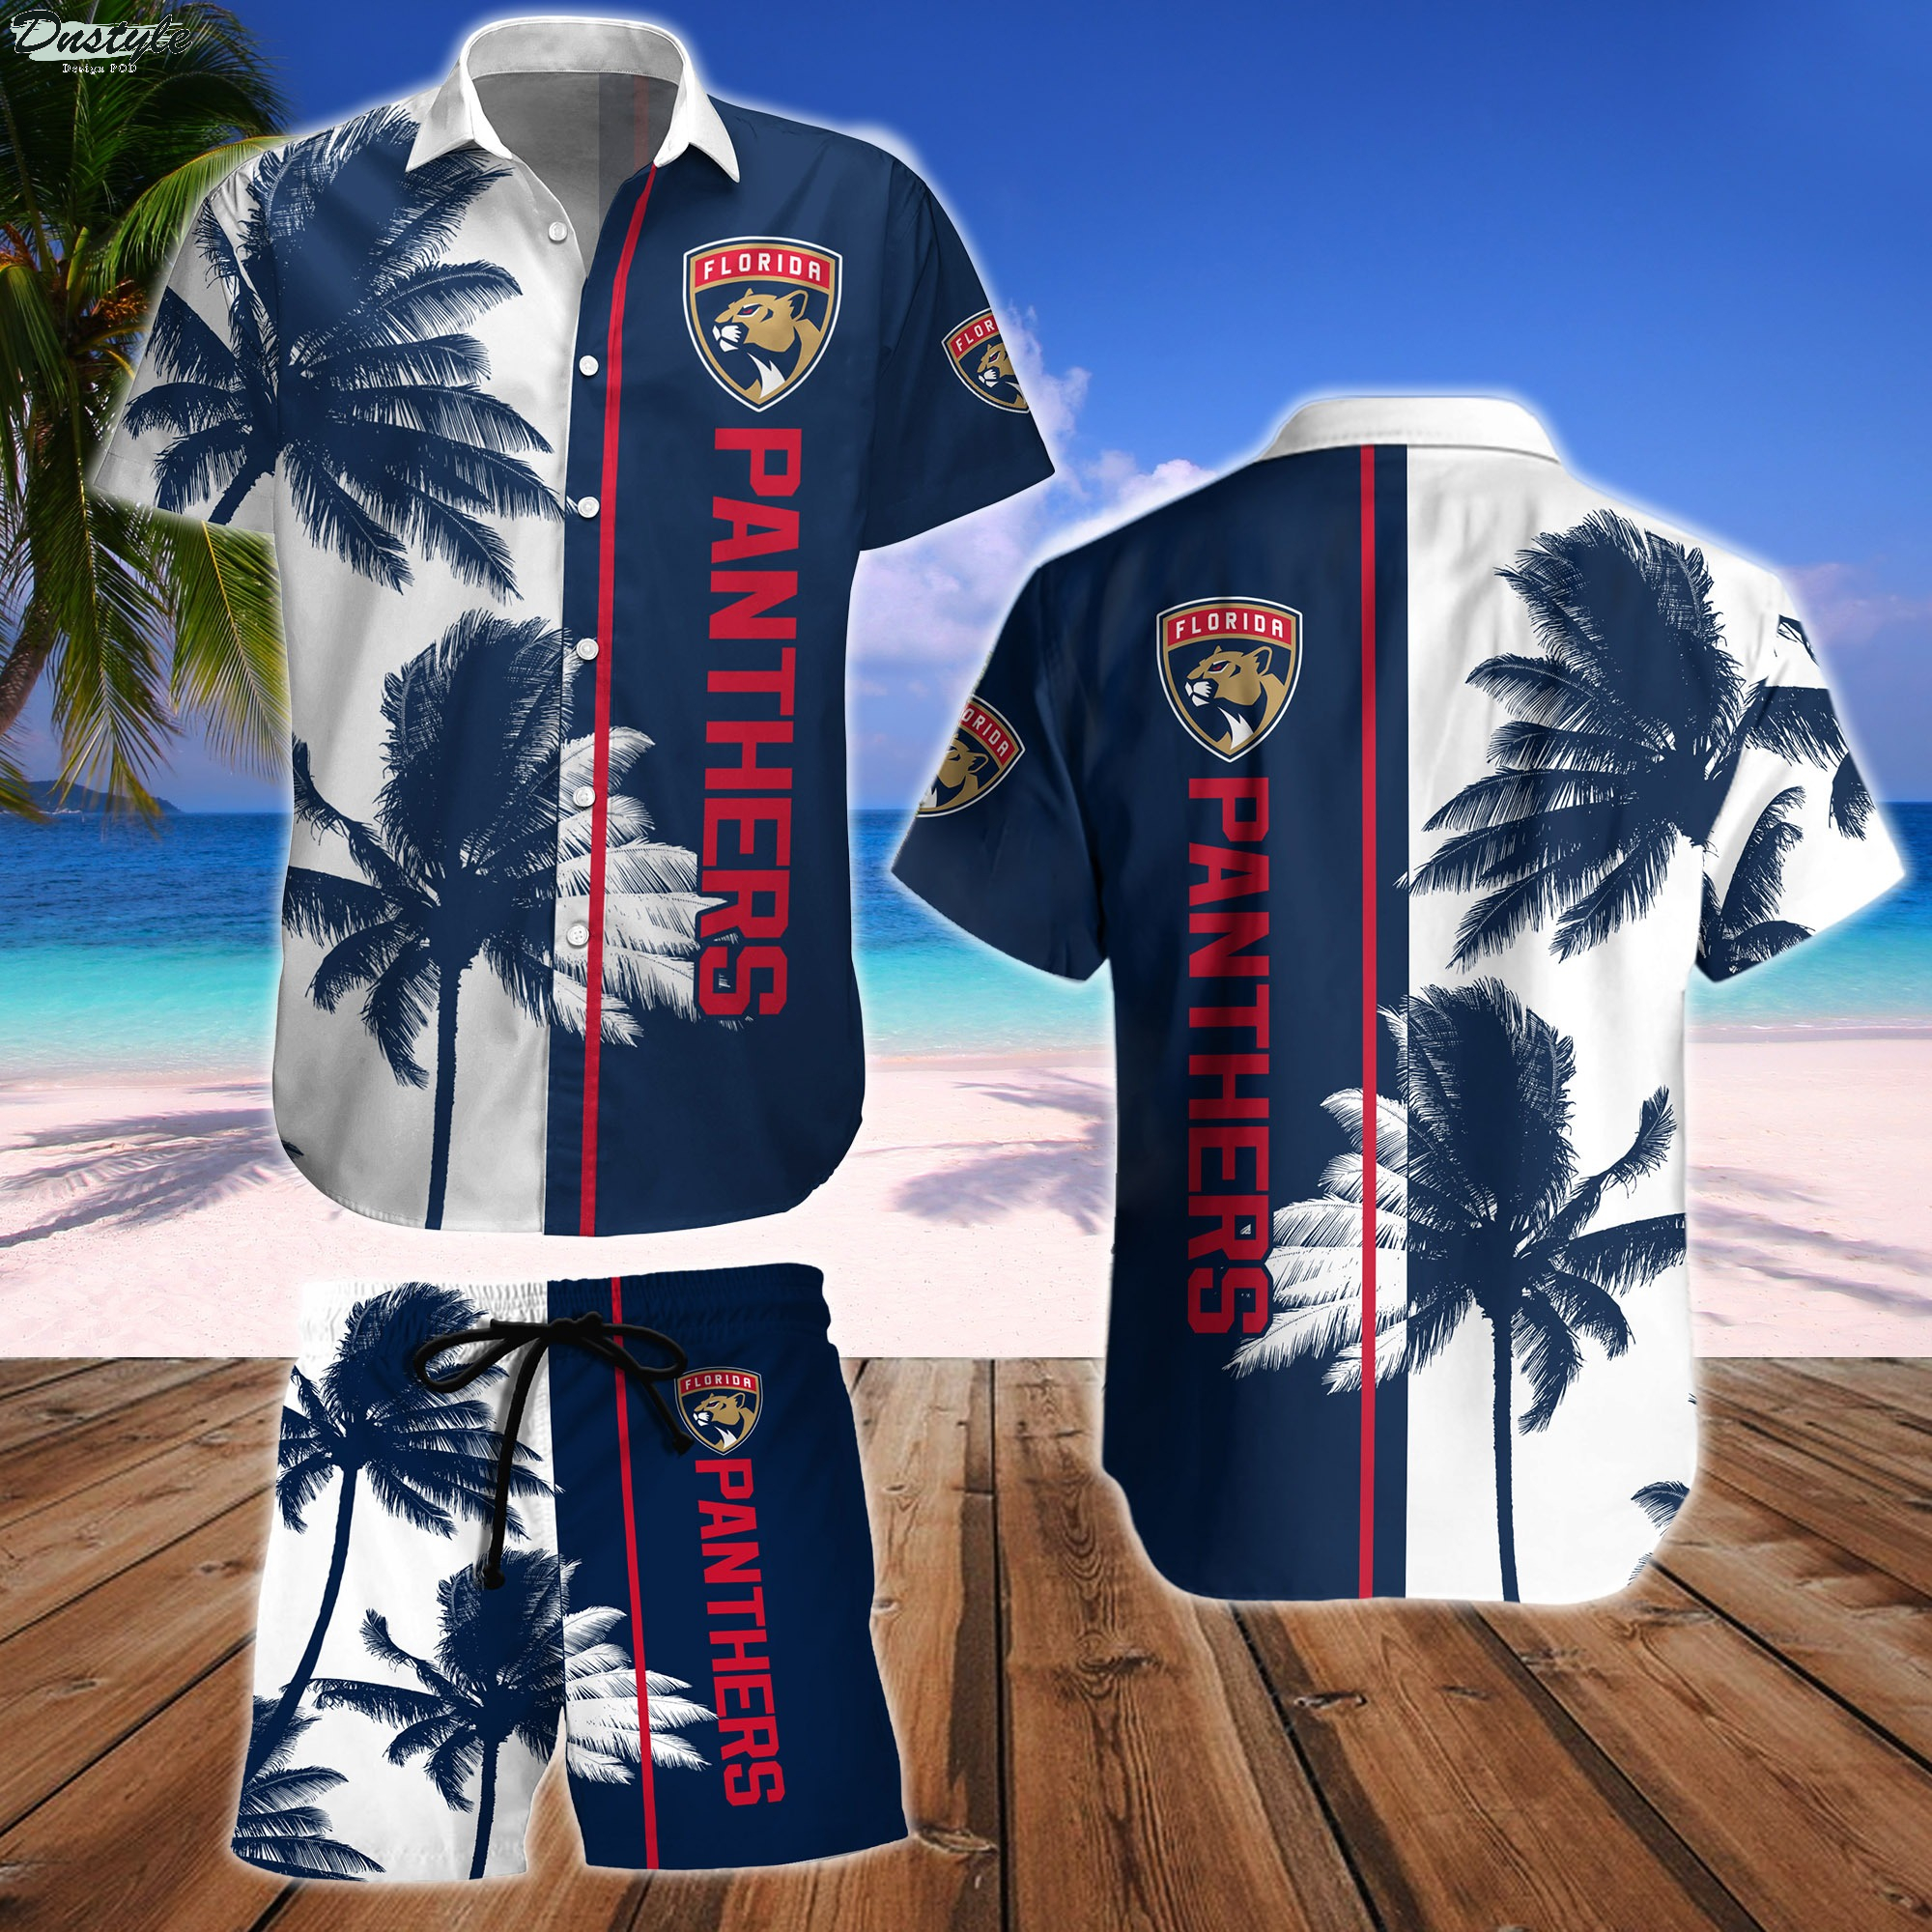 Florida Panthers Hawaiian Shirt And Short